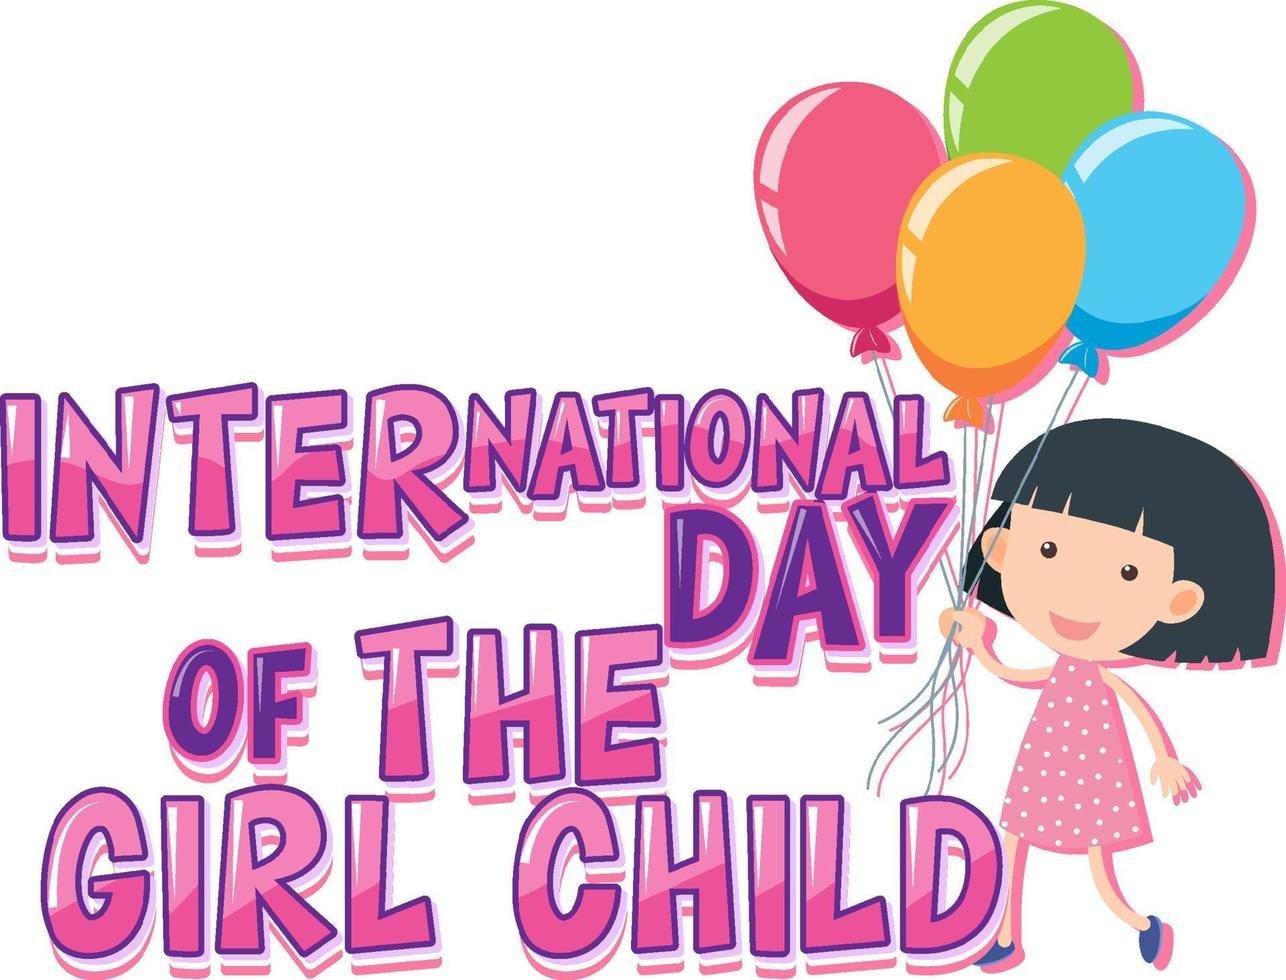 diseño de carteles del día internacional de la niña vector